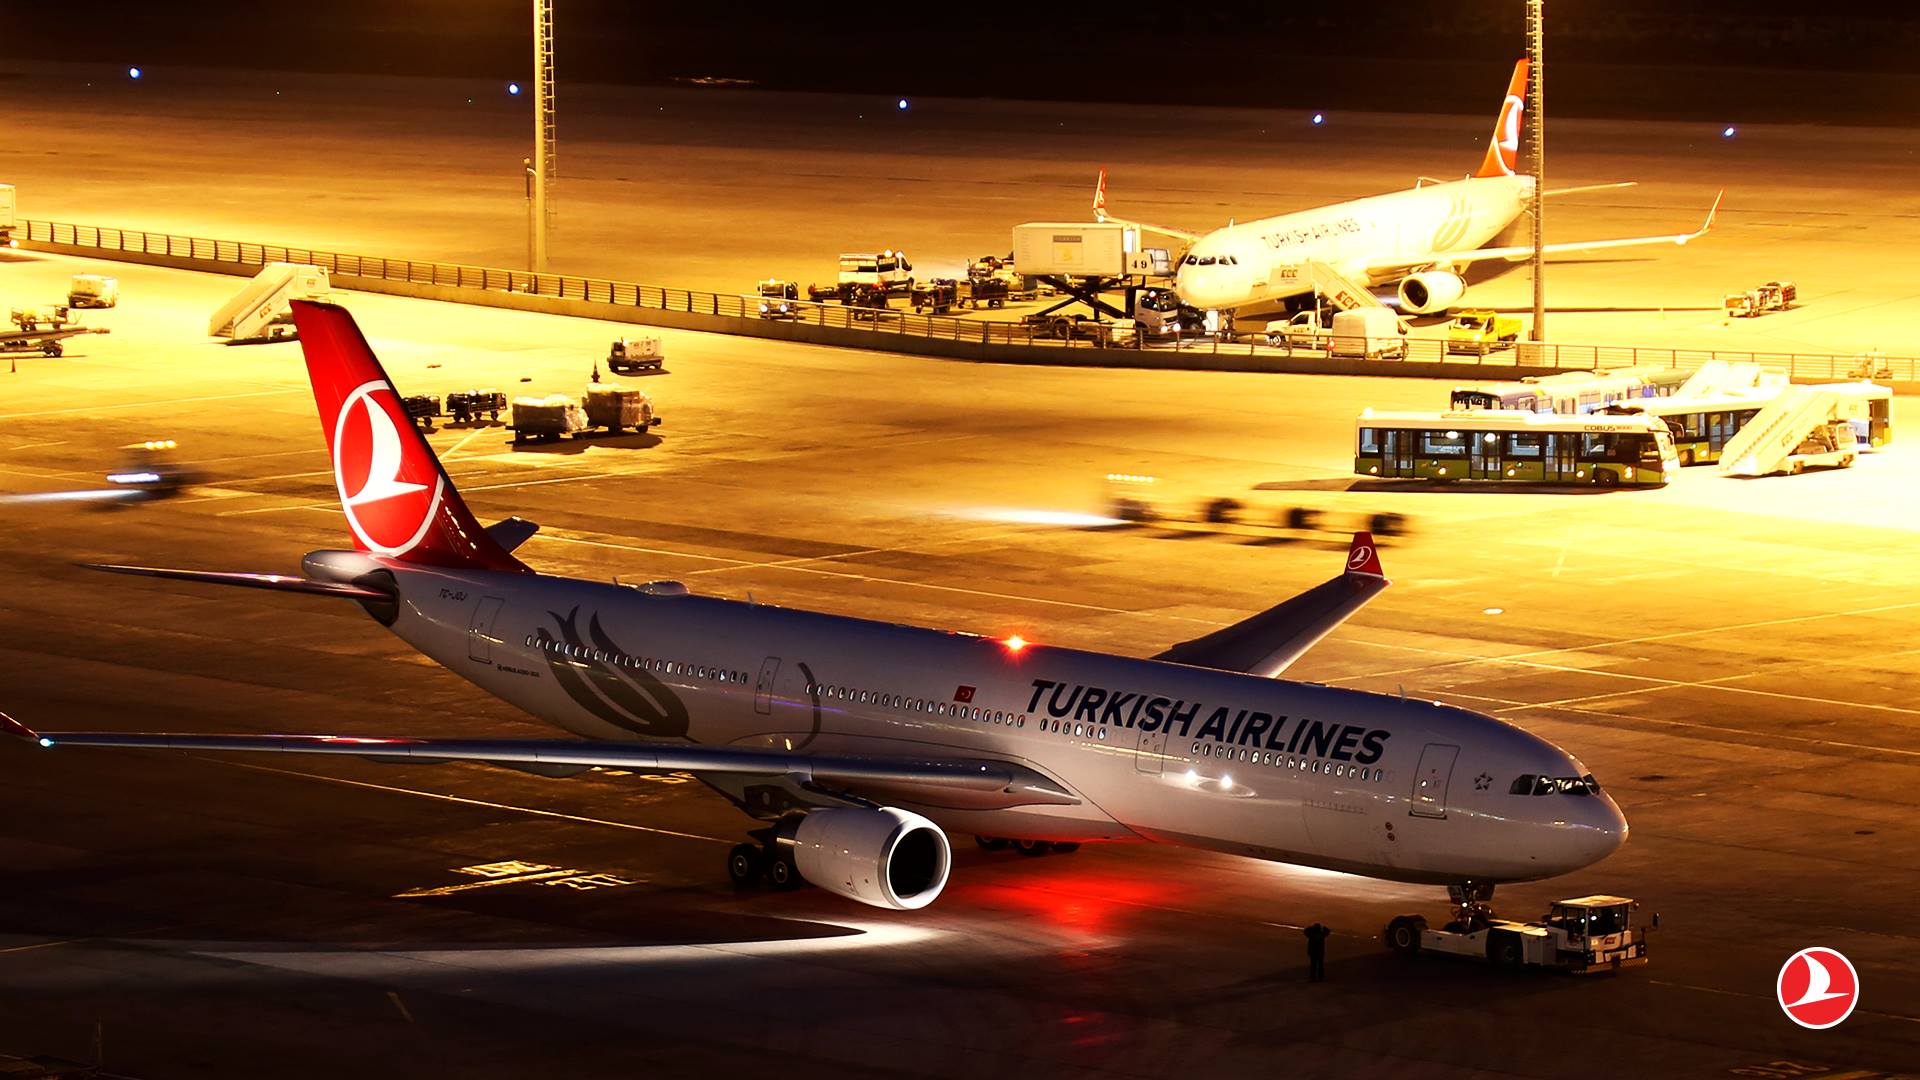 ターキッシュエアラインズ 羽田 イスタンブール線を開設へ 成田線は1往復羽田へ移管も週4便は残留見込み Sky Budget スカイバジェット